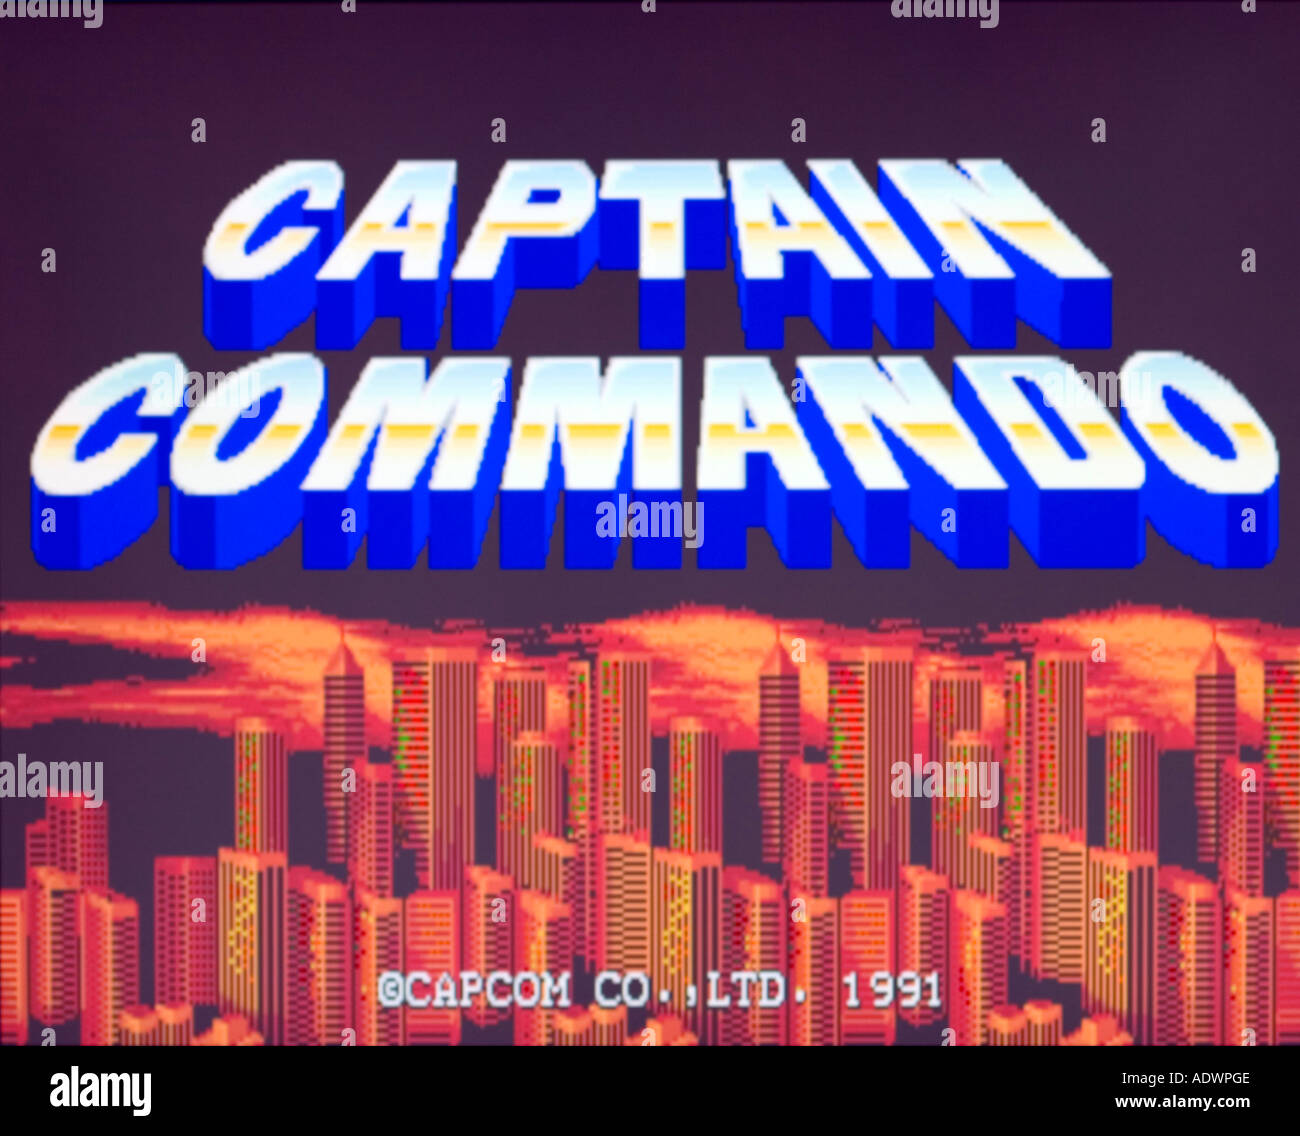 Captain Commando (1991)